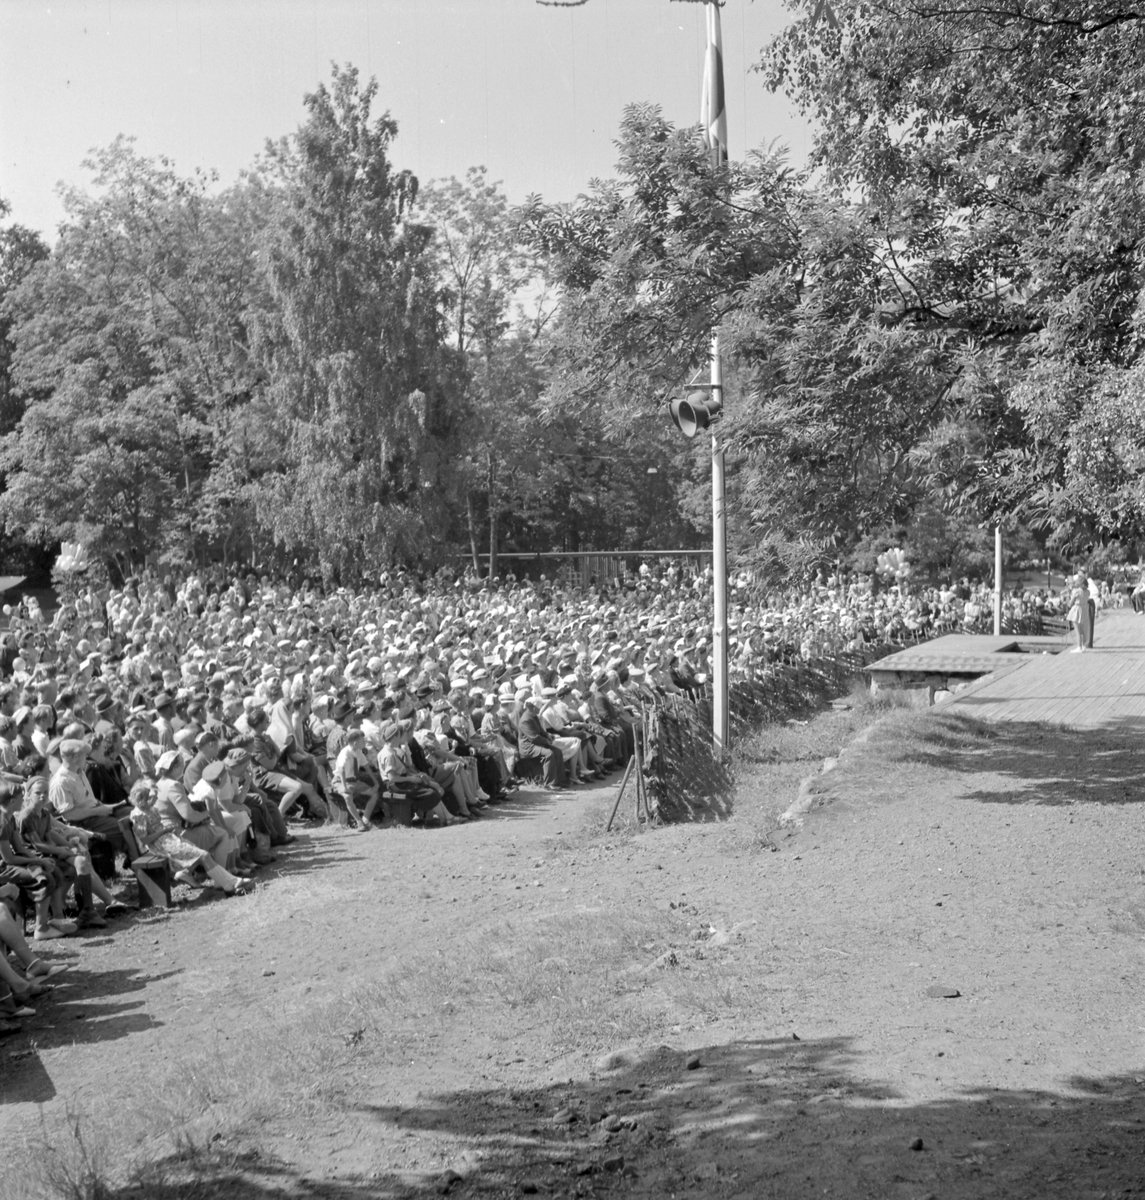 Furuvik

Furuviksparken invigdes pingstdagen 1936.
Folkdanslaget Furuviks Ungdomslag och Barnkabarén blev Furuviksbarnen.

Det är fullsatt under föreställningen










